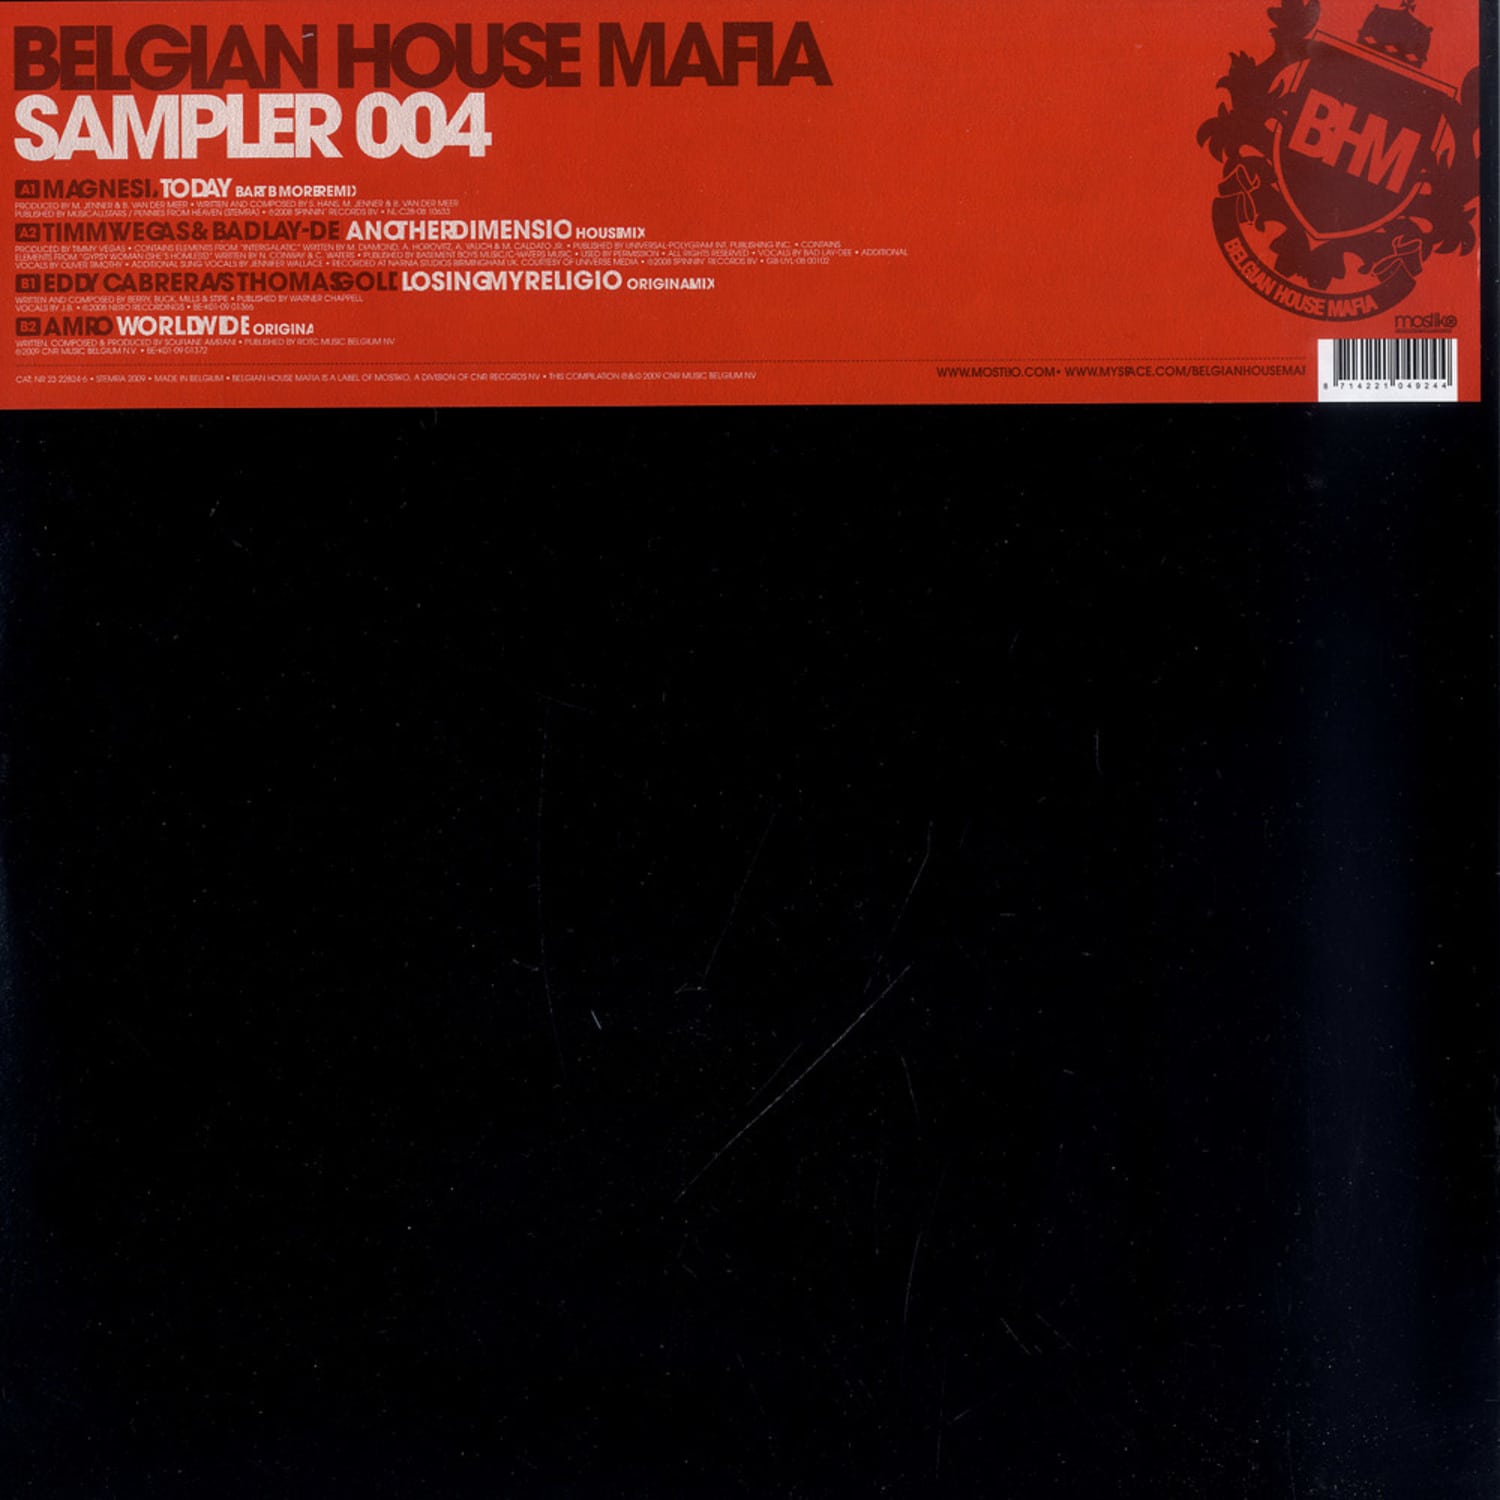 Belgian House Mafia - SAMPLER 004